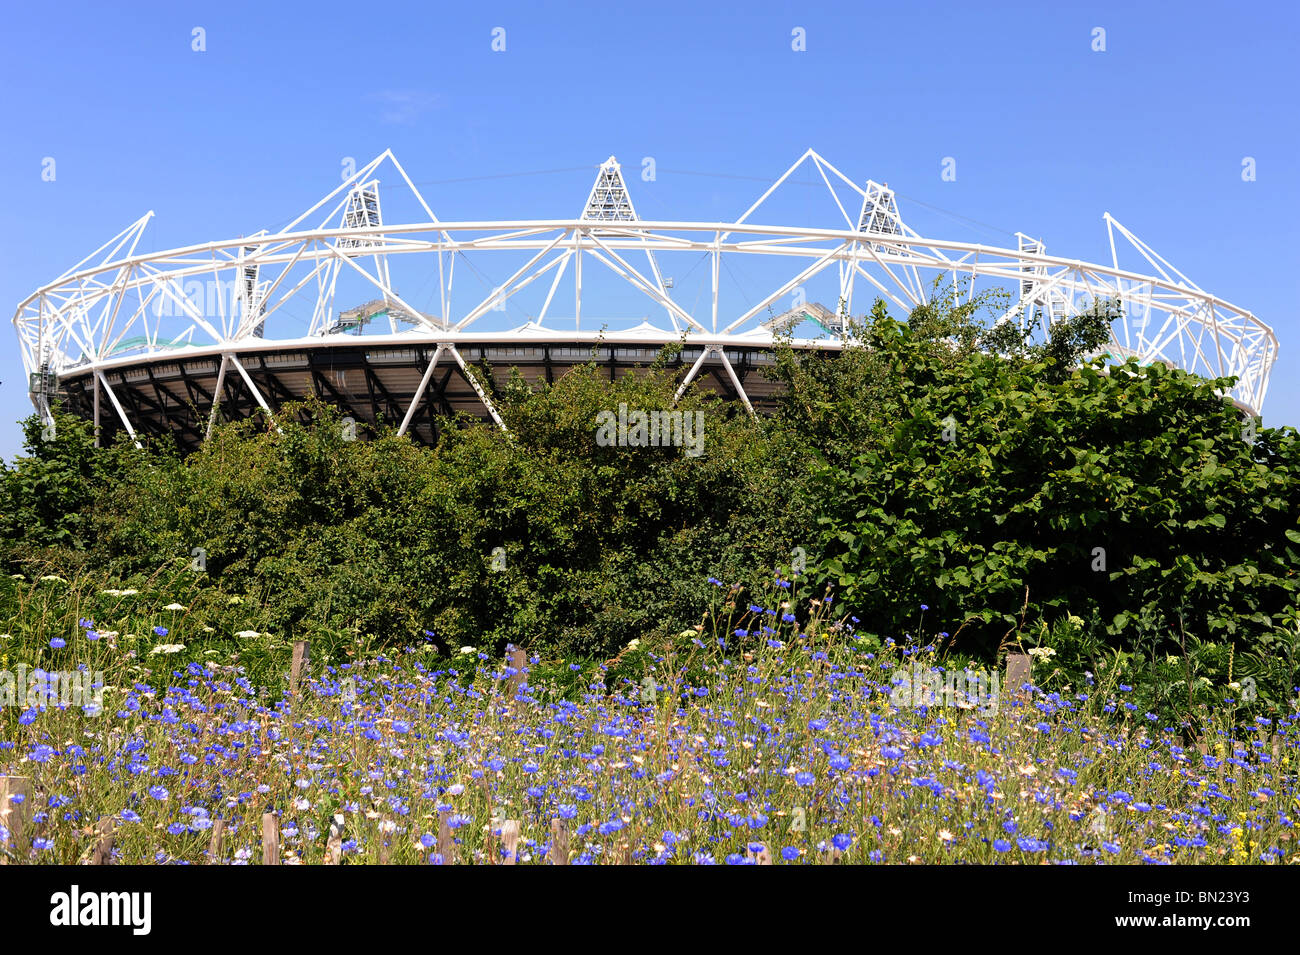 Stade olympique Londres 2012 site situé dans l'Est de Londres, Angleterre. Banque D'Images